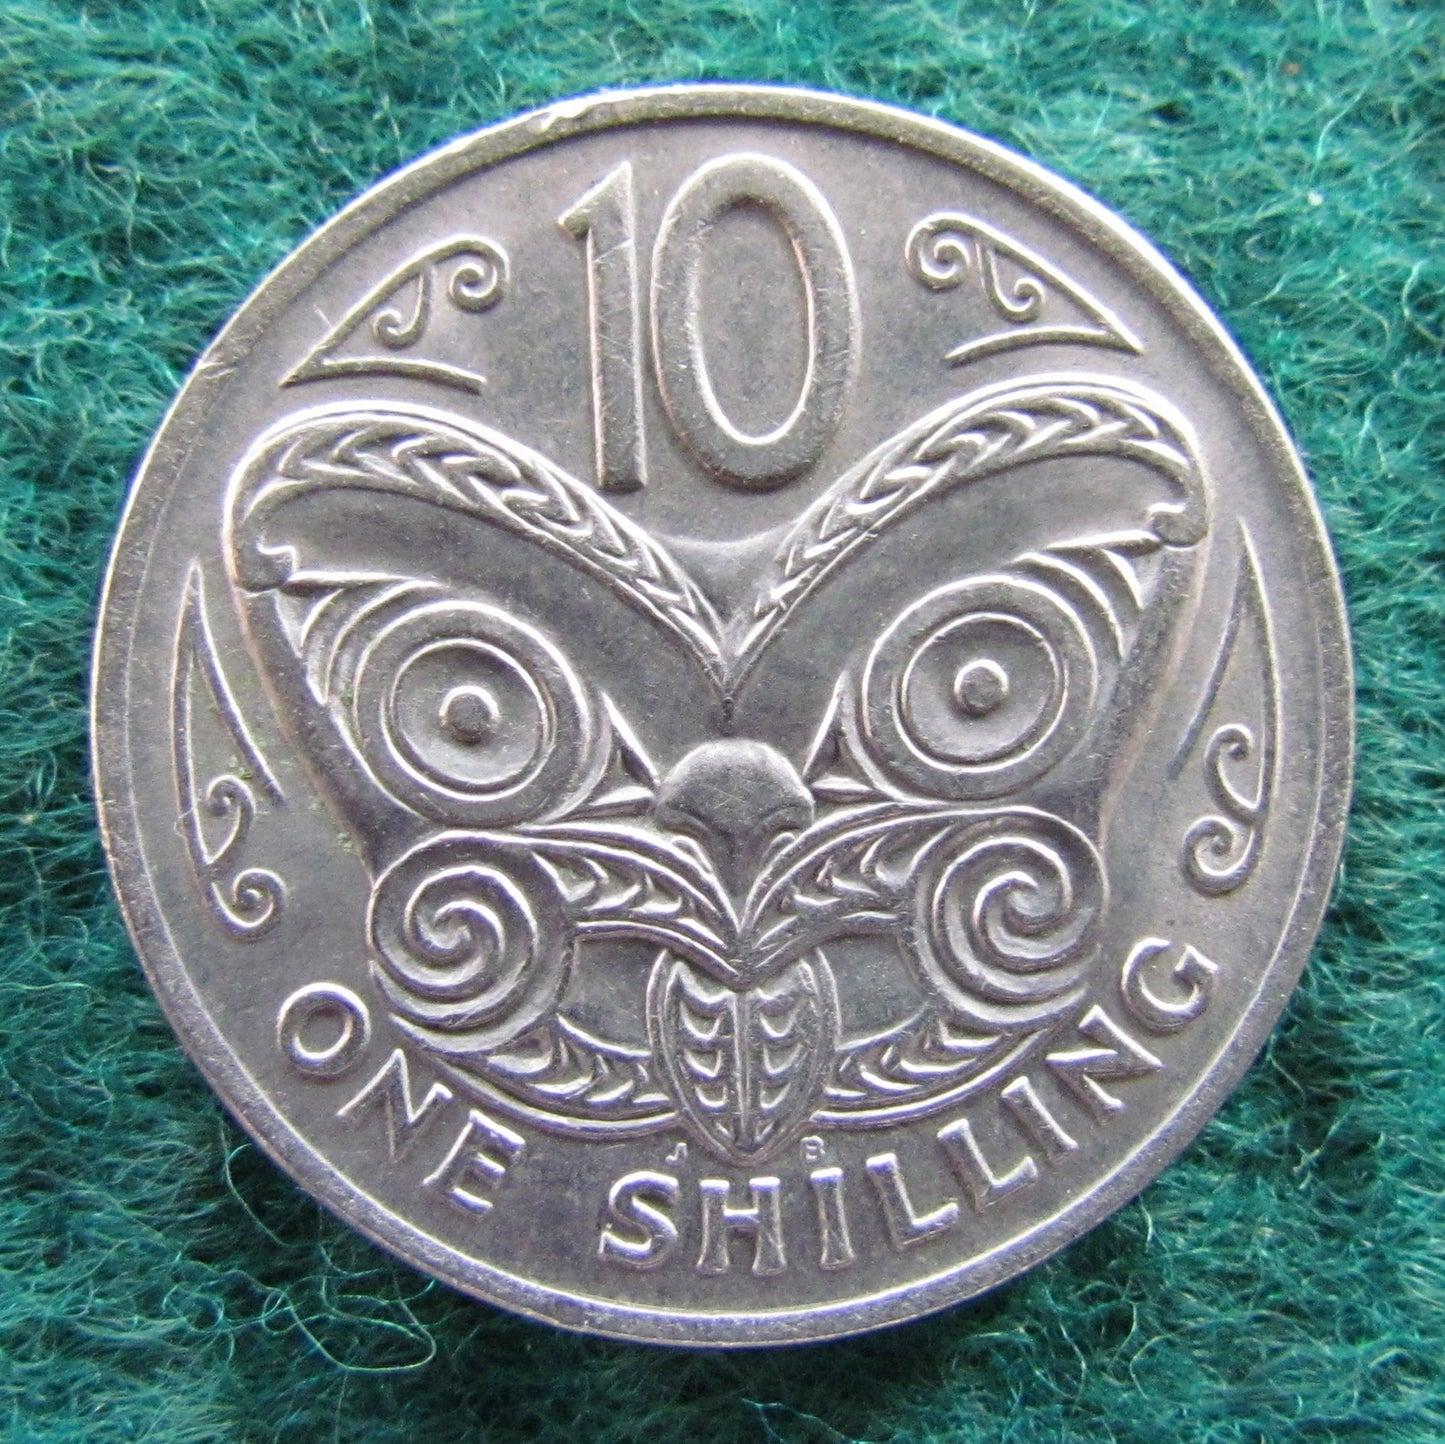 New Zealand 1969 10 Cent Queen Elizabeth Coin